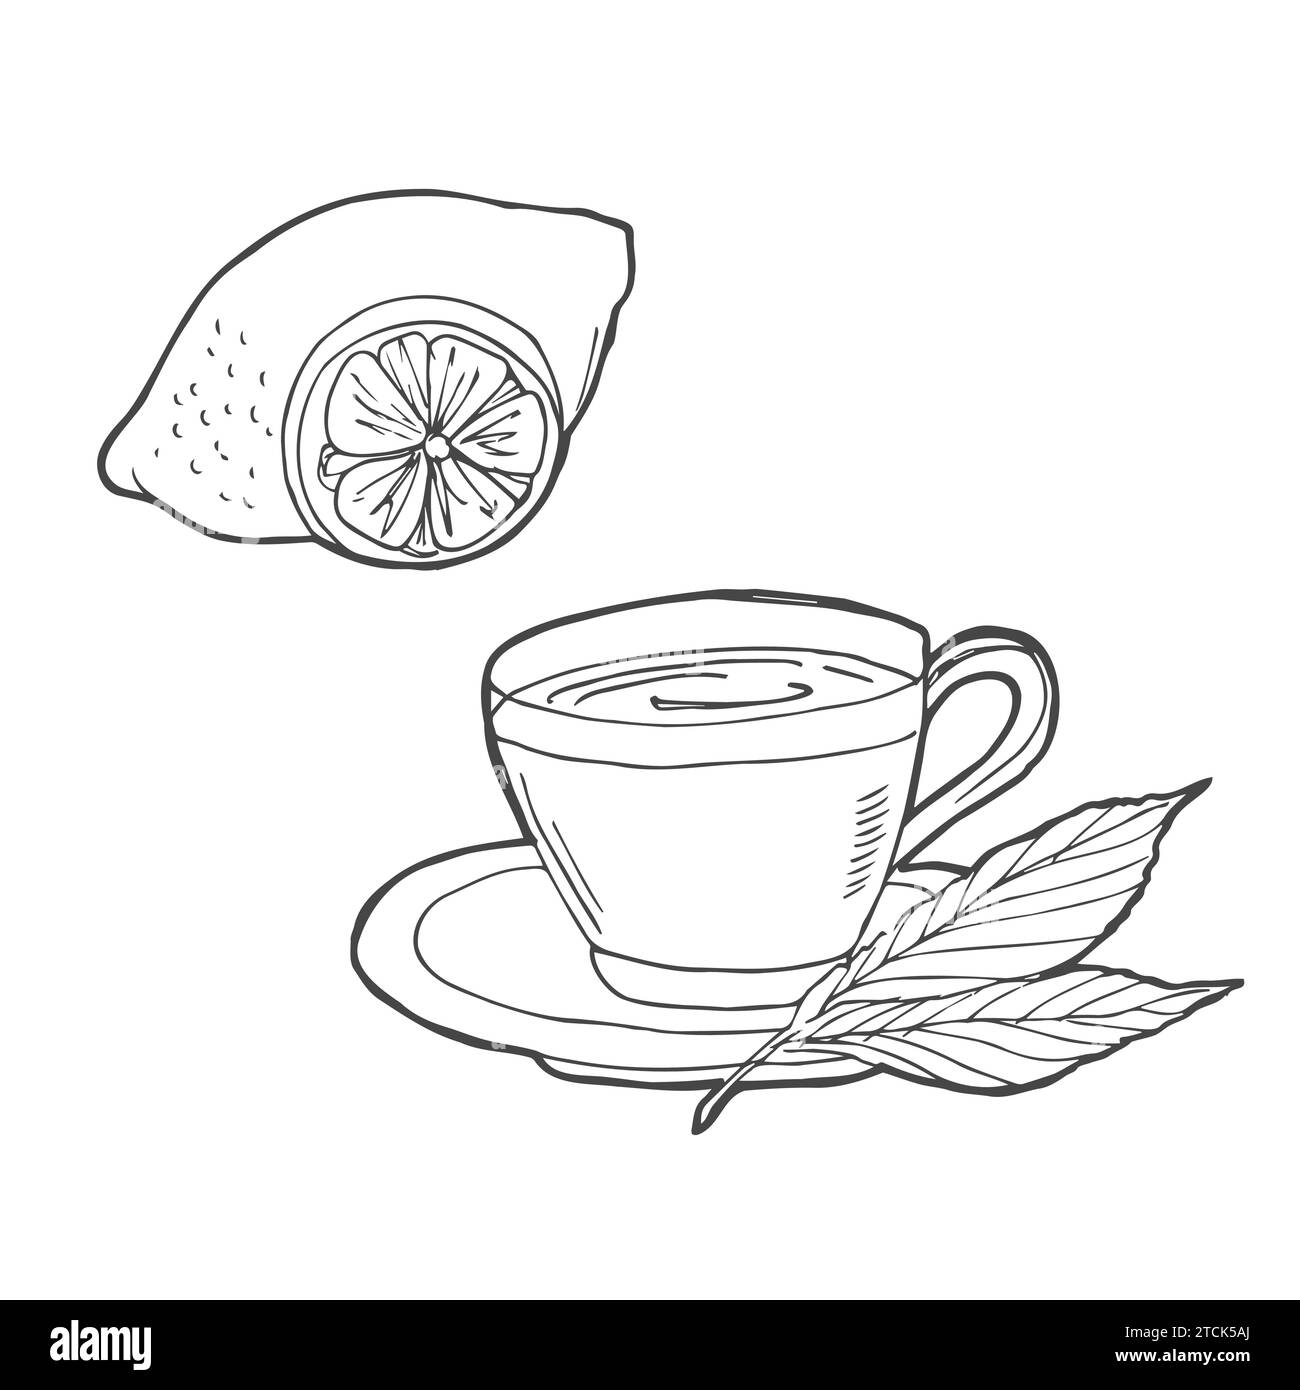 Handgezeichnete Teeskizze. Tasse Tee mit Minze und Limette, Zitrone isoliert auf weiß. Doodle Outline. Stock Vektor